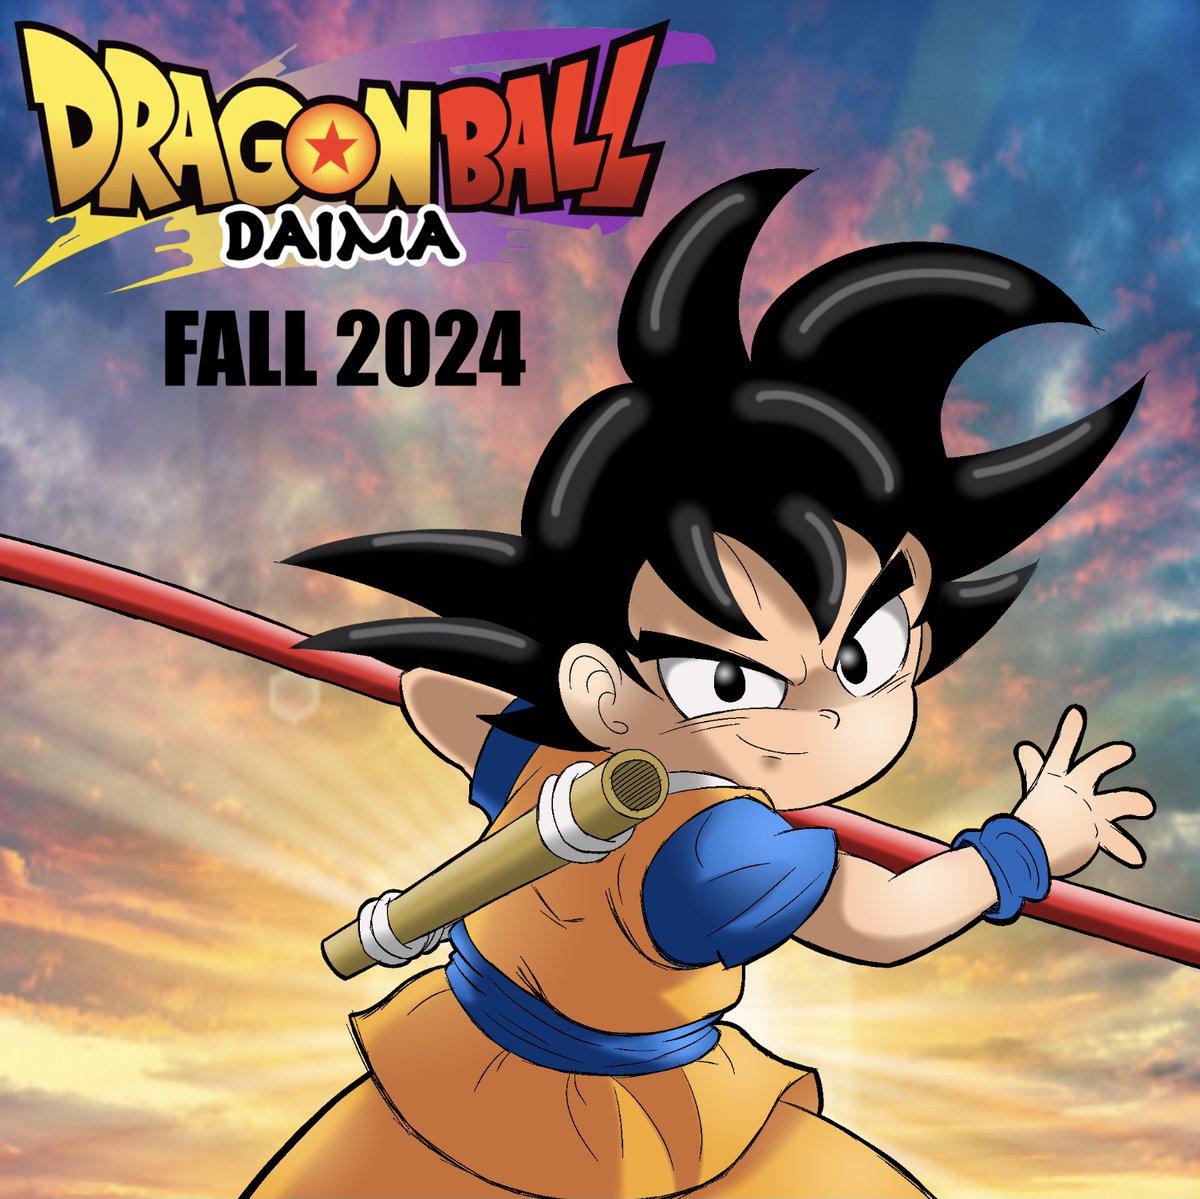 New Dragon Ball Series, Dragon Ball: Daima, Confirmed for Fall